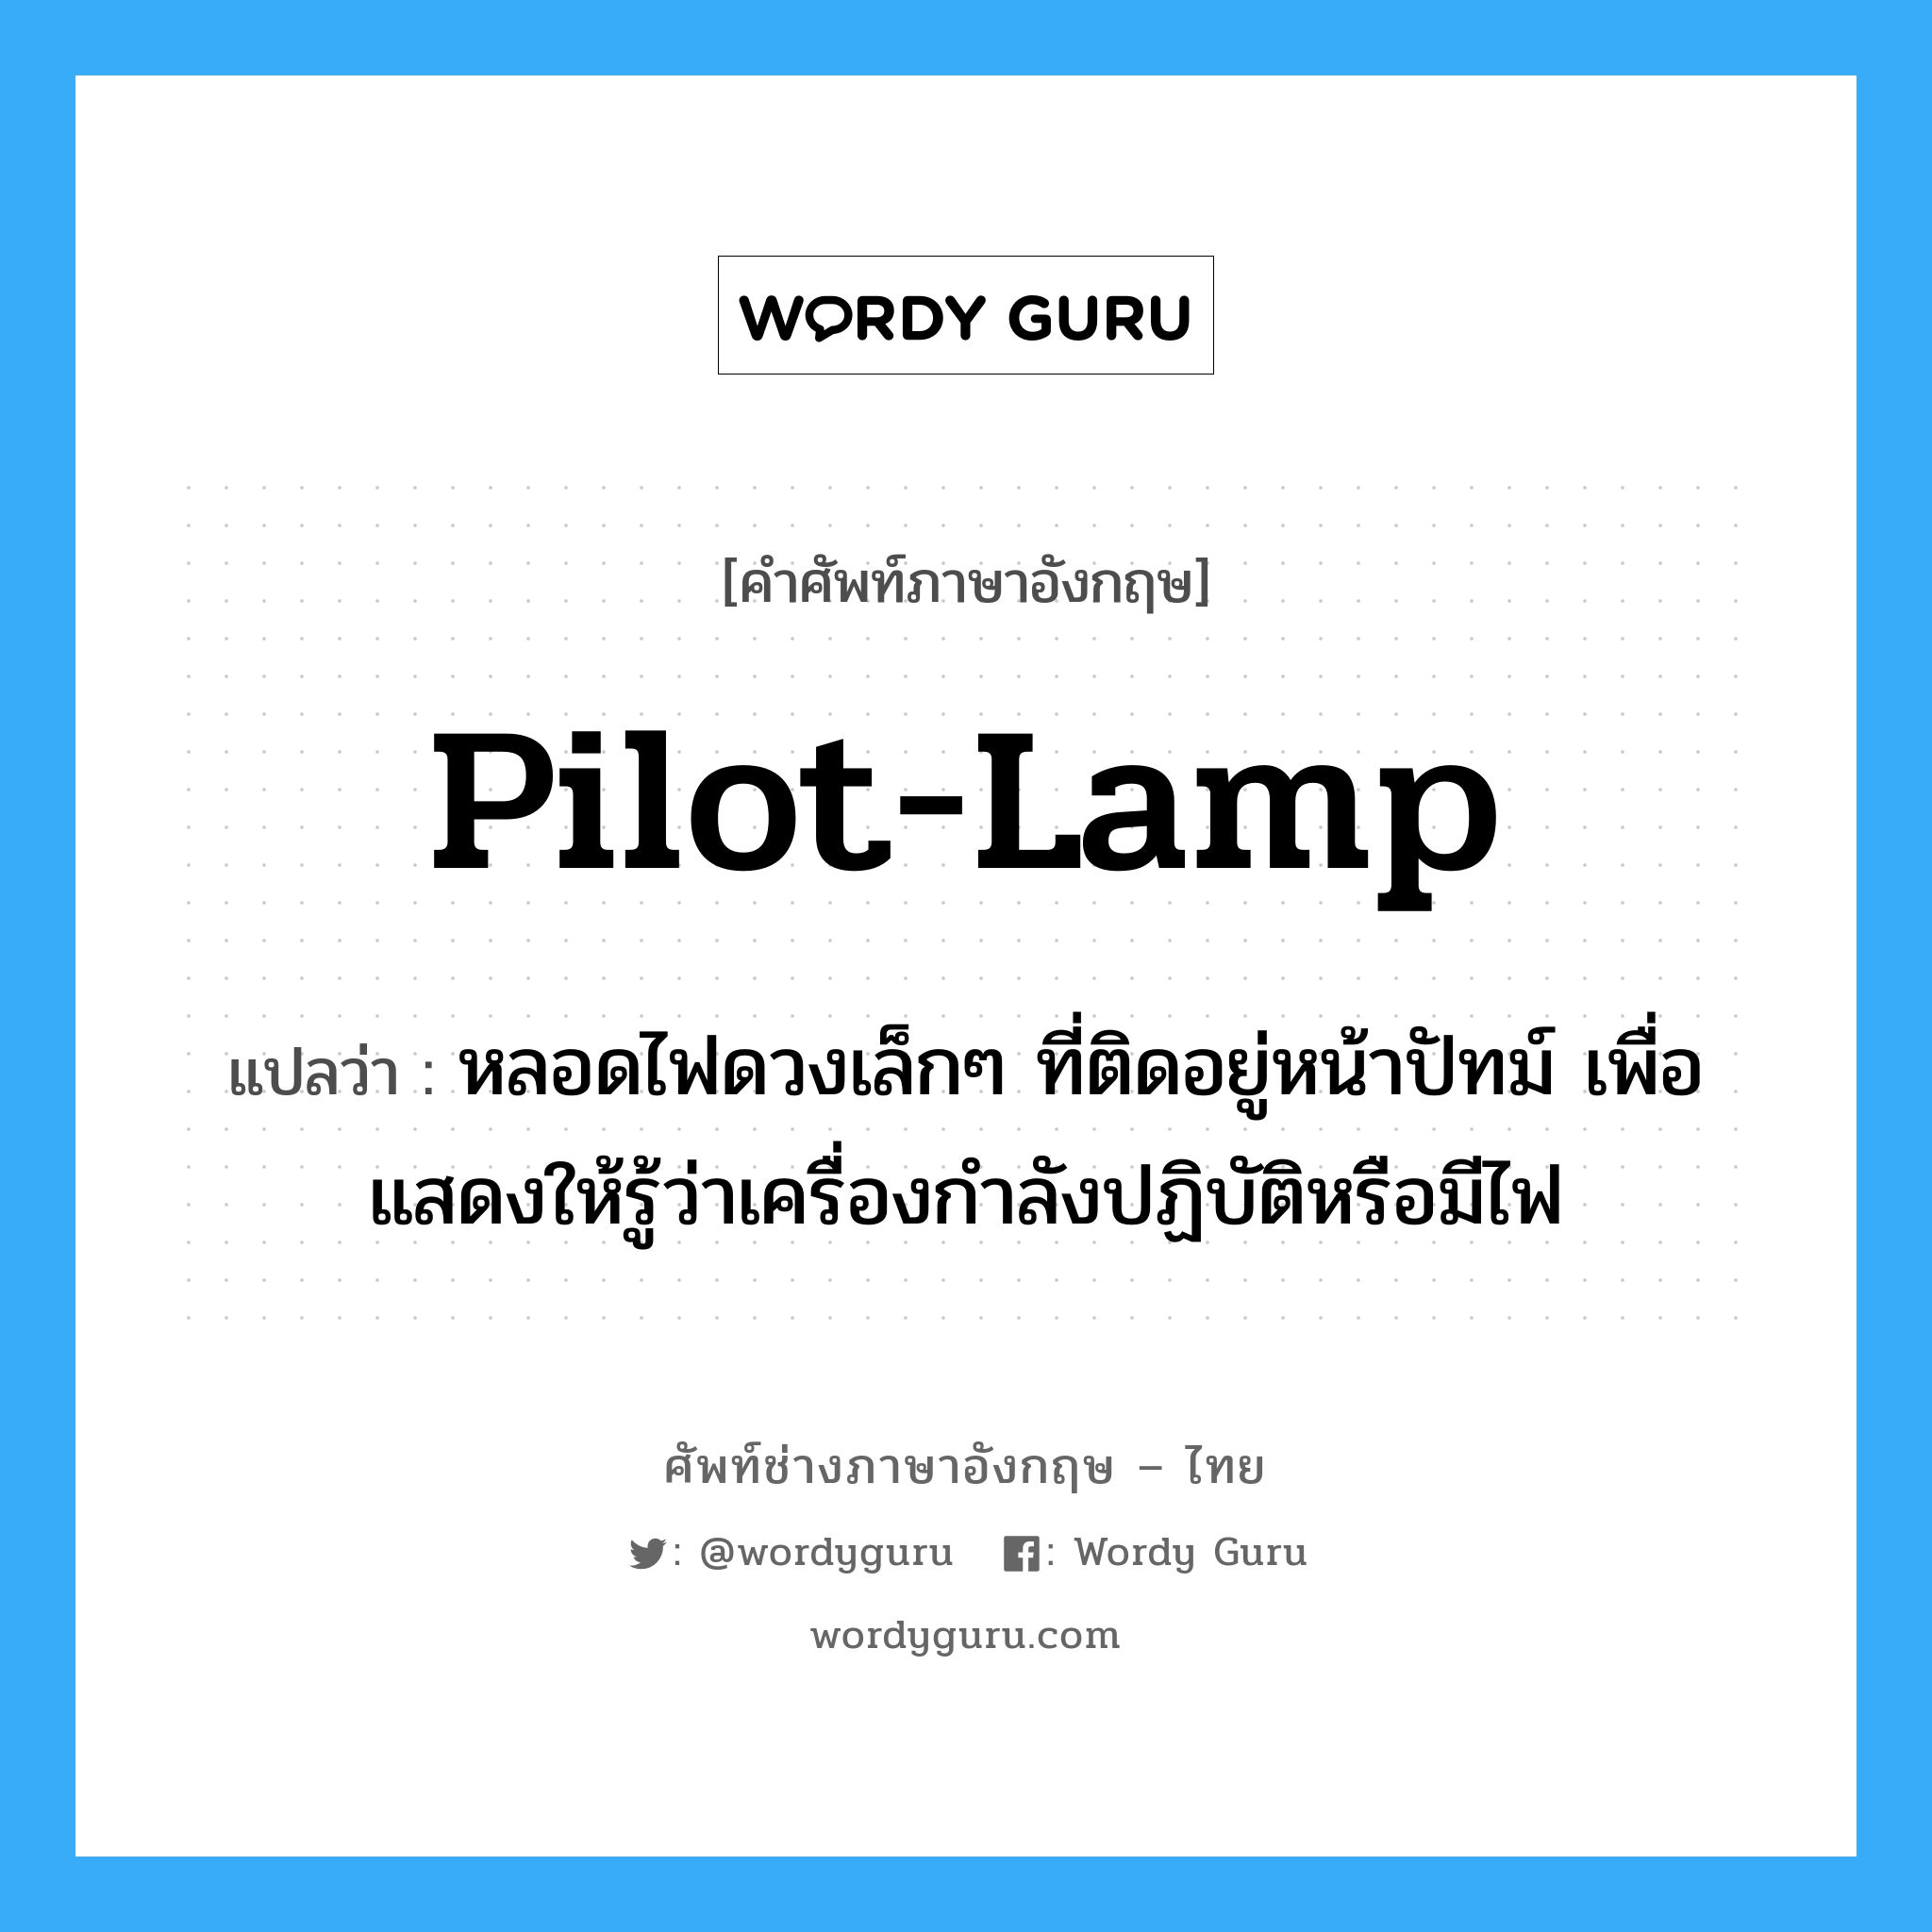 pilot-lamp แปลว่า?, คำศัพท์ช่างภาษาอังกฤษ - ไทย pilot-lamp คำศัพท์ภาษาอังกฤษ pilot-lamp แปลว่า หลอดไฟดวงเล็กๆ ที่ติดอยู่หน้าปัทม์ เพื่อแสดงให้รู้ว่าเครื่องกำลังปฏิบัติหรือมีไฟ